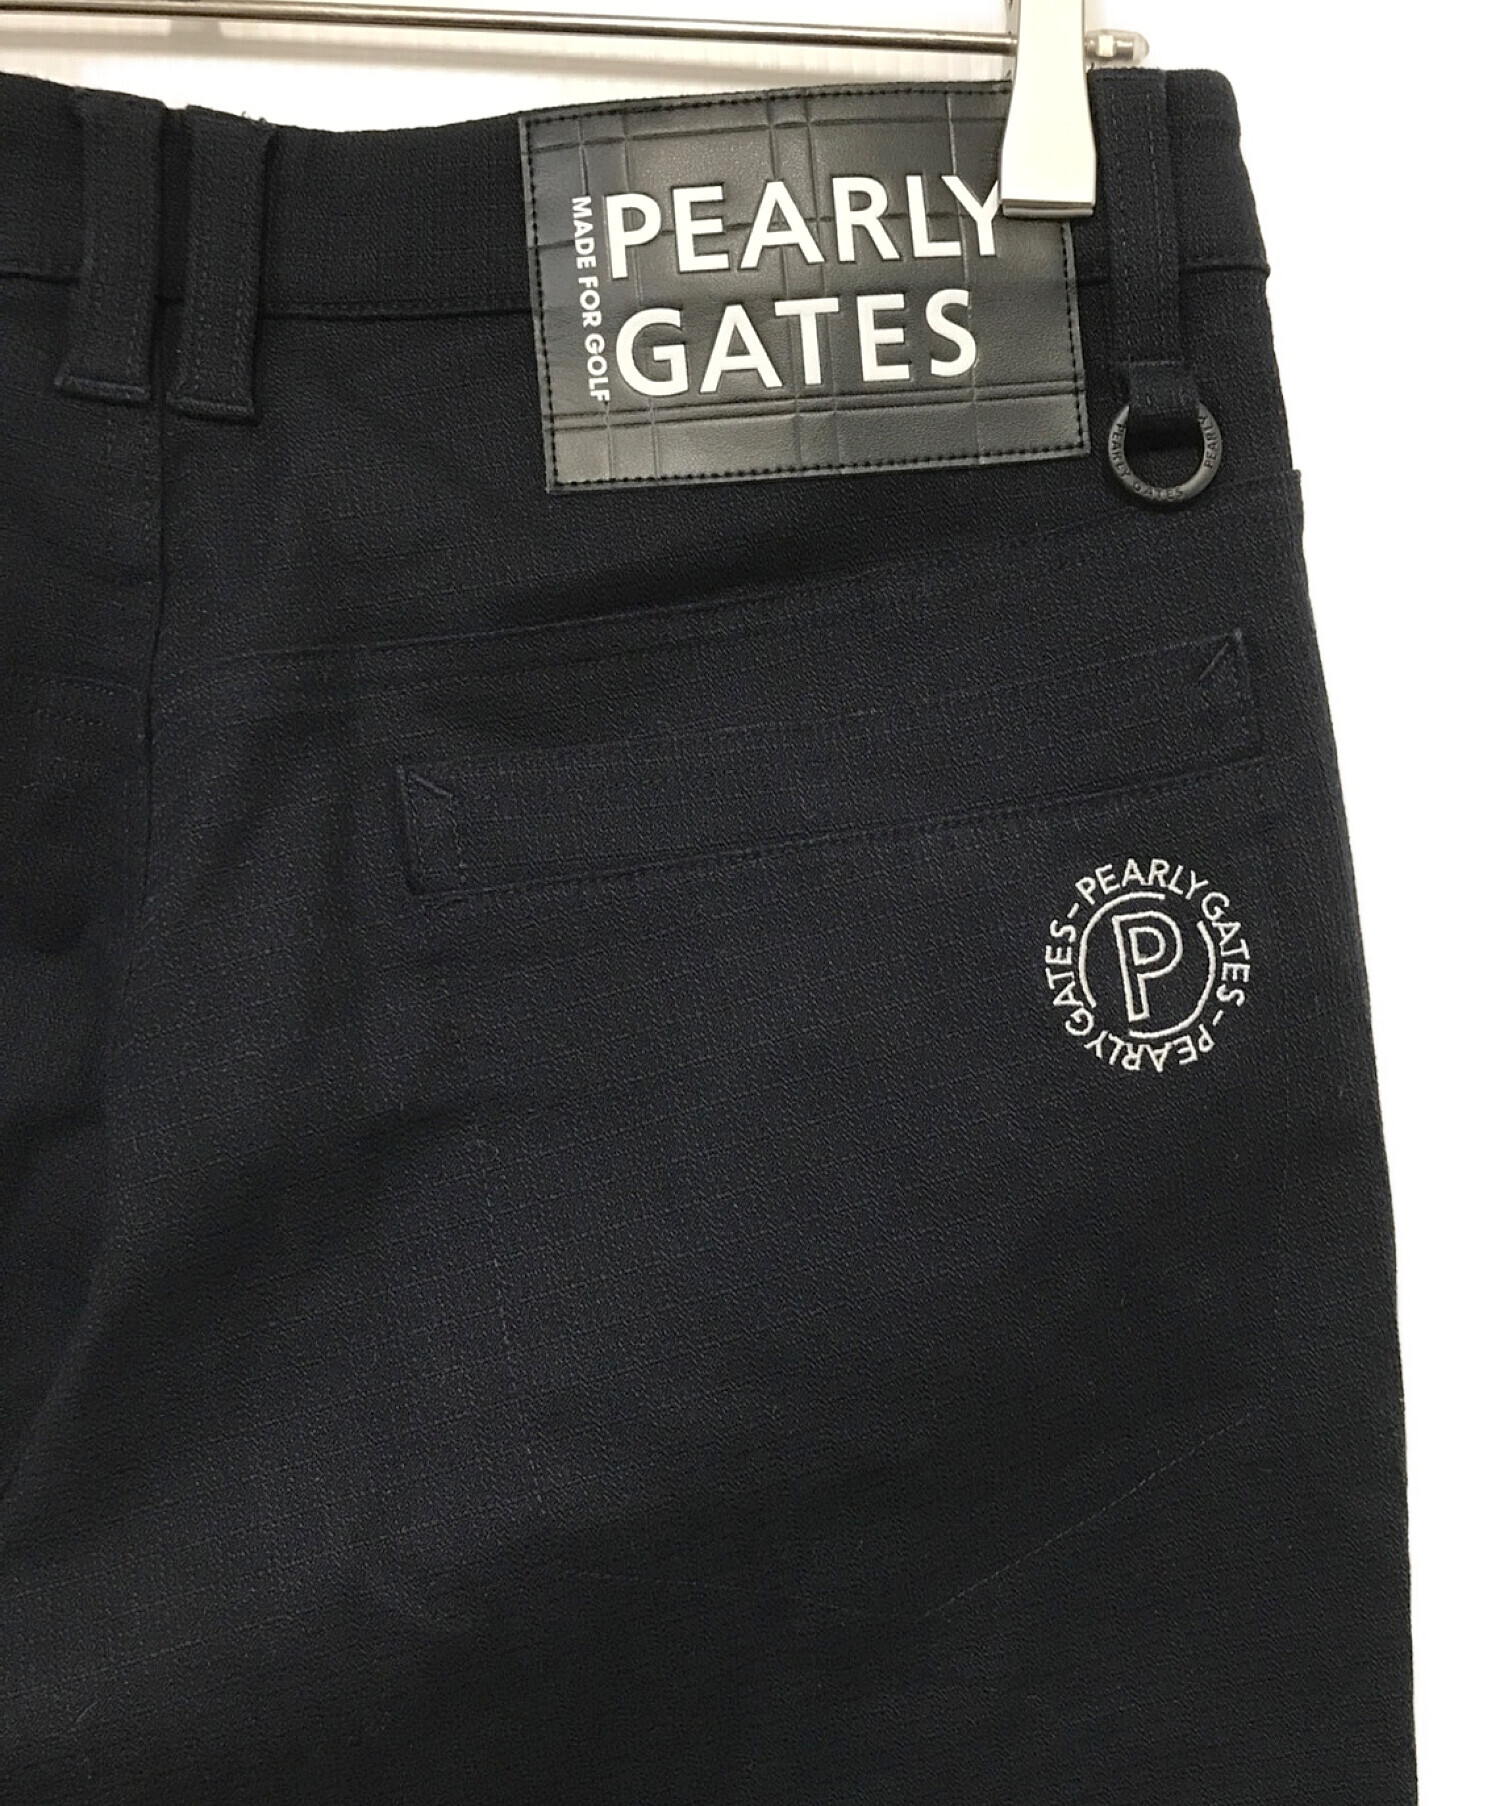 PEARLY GATES (パーリーゲイツ) コットンストレッチドビーチェック 5ポケットパンツ ネイビー サイズ:4